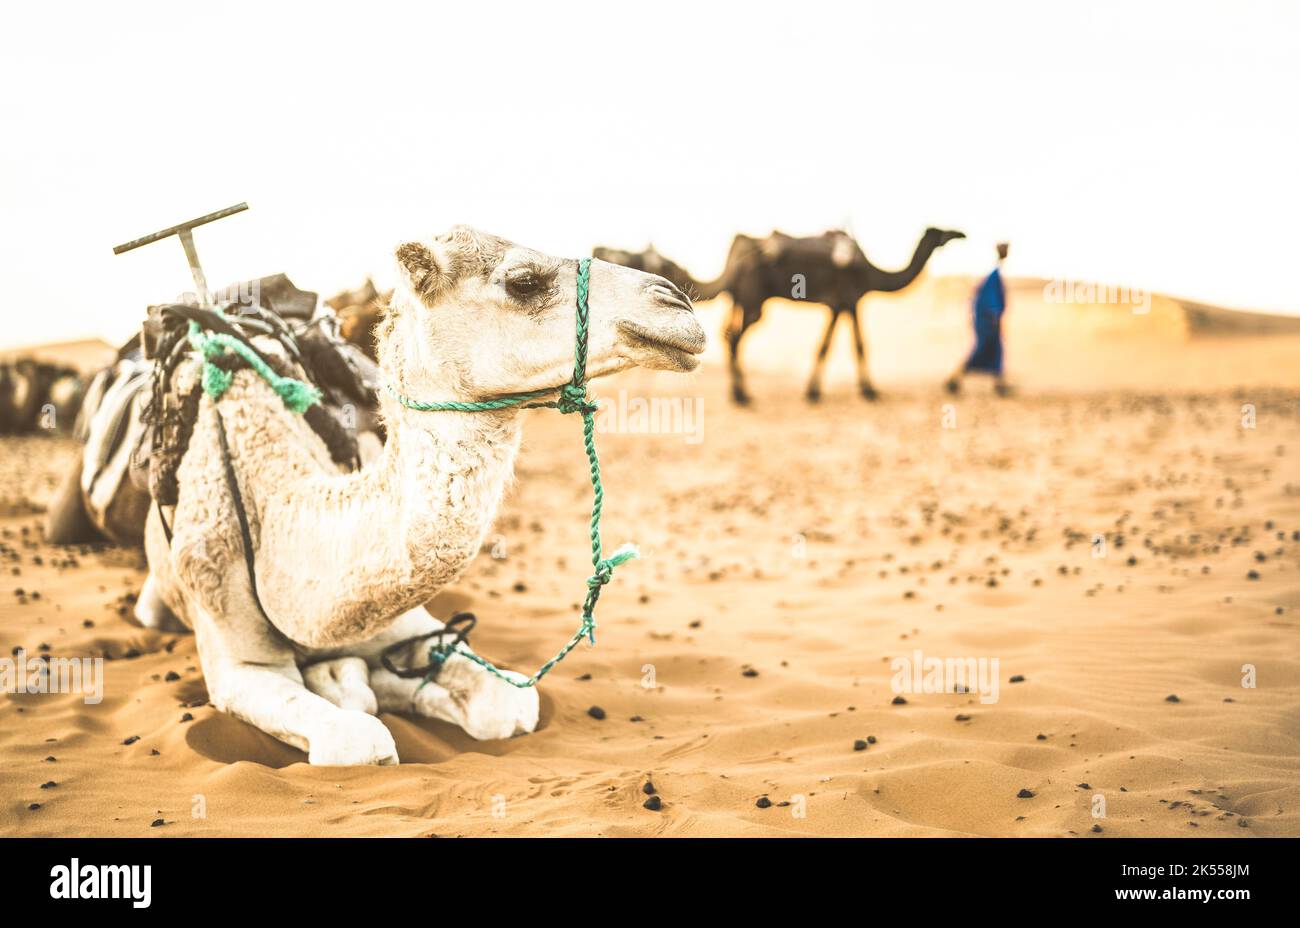 Gezähmte Dromedare Ruhe nach Wüstenritt Ausflug in Merzouga Gebiet in der Nähe von Erg Chebbi Dünen am Anfang der Sahara in Marokko - Reise Wanderlust conce Stockfoto